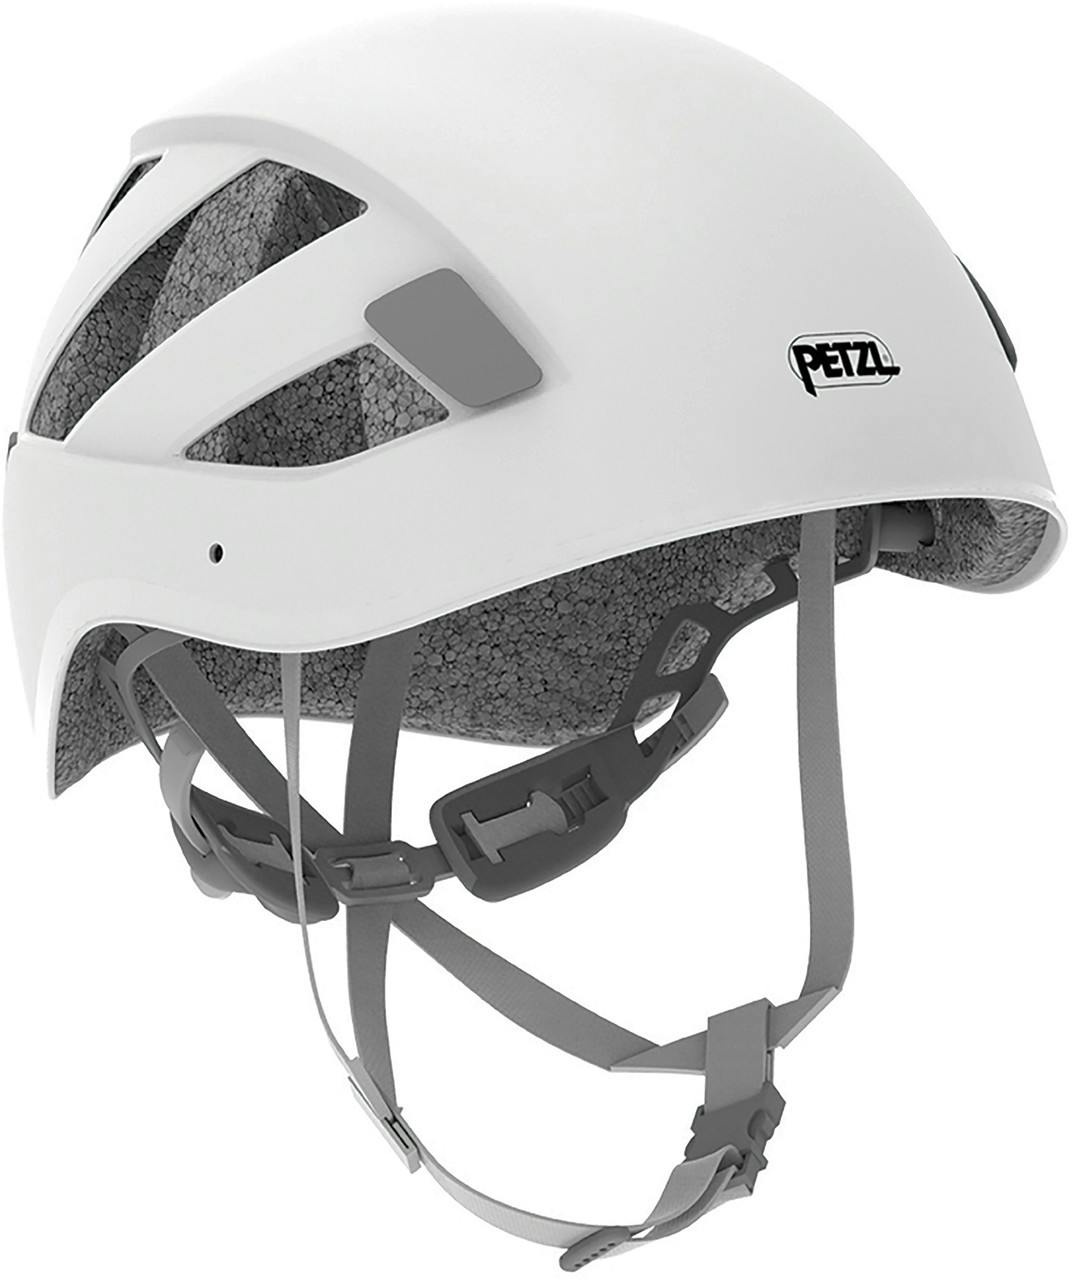 Boreo Helmet White